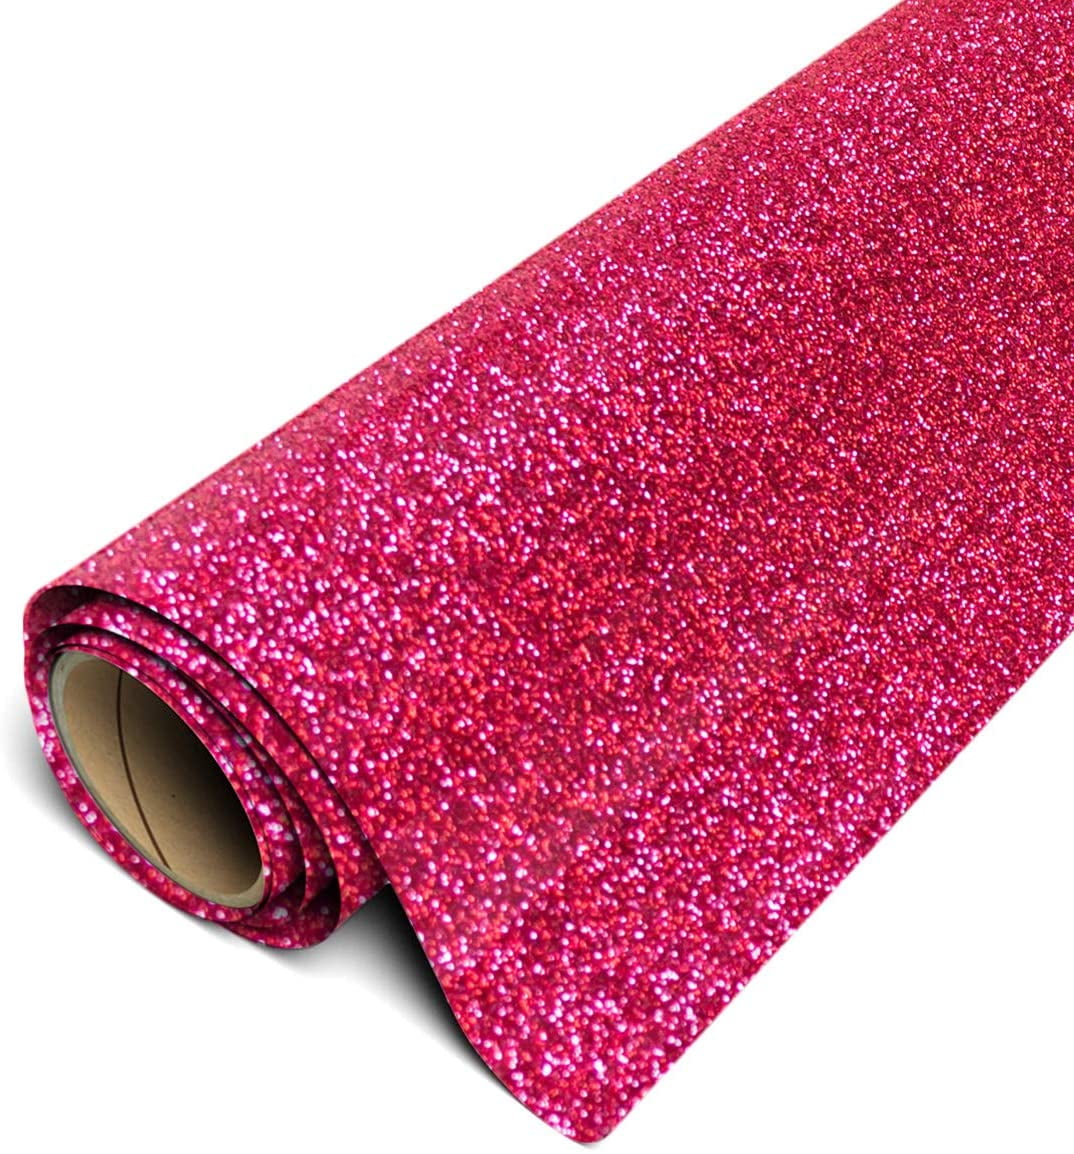 Siser Glitter HTV Iron On Heat Transfer Vinyl 20 x 10ft Roll - Translucent  Light Pink 